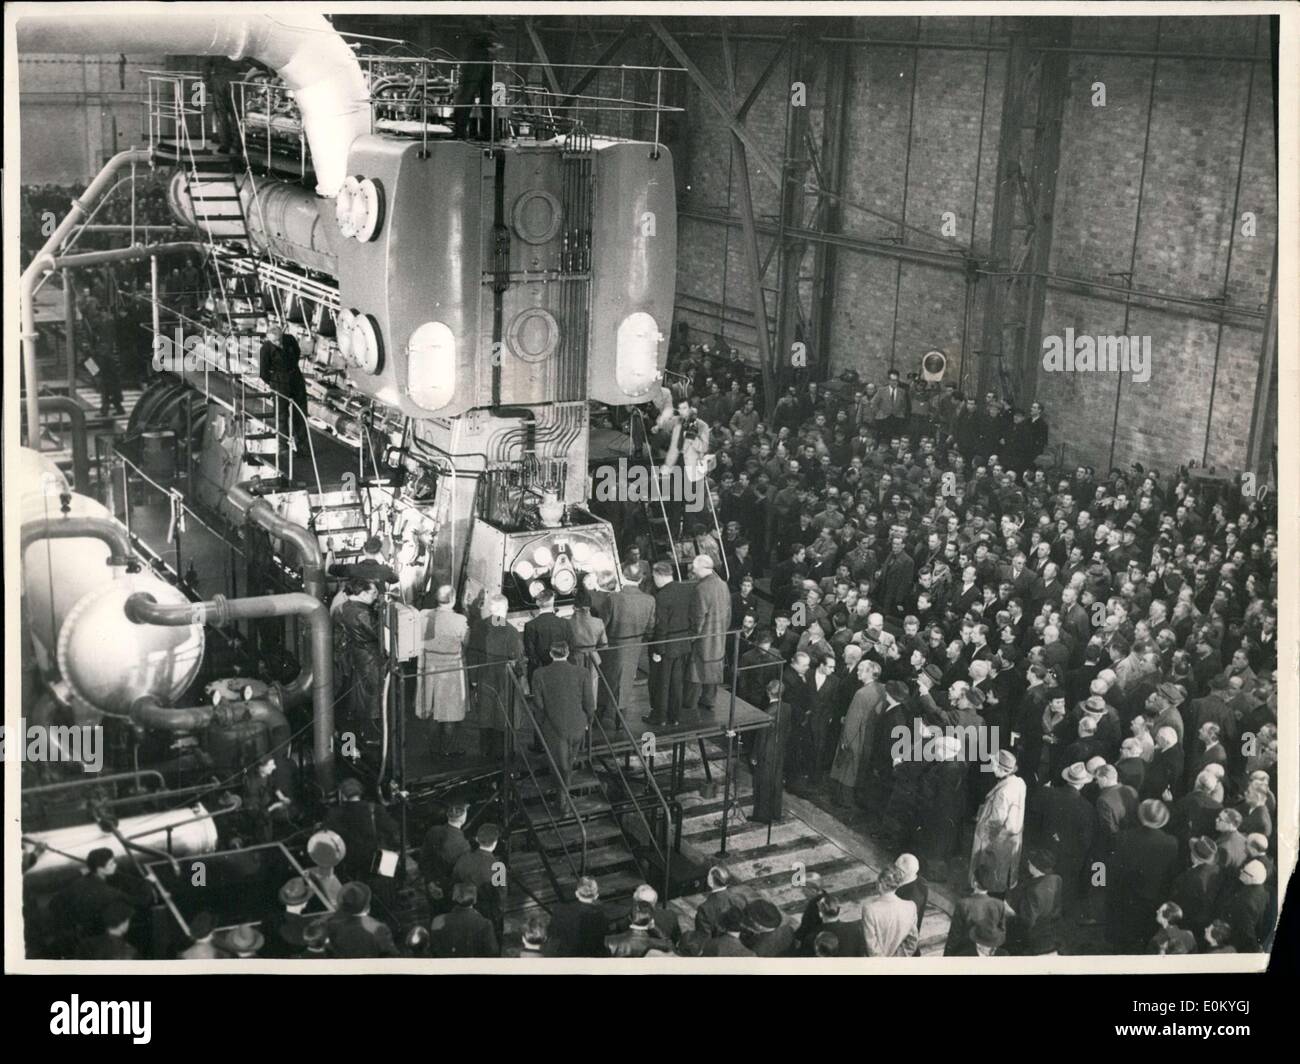 Le 26 novembre 1952 - En présence de M. Reuter, maire de Berlin le premier après-guerre-diesel moteur marin moteur a été montré à Berlin. Il était de 11,5 mètres de long, 8 mètres de haut, et avait 6 cylindres. Banque D'Images